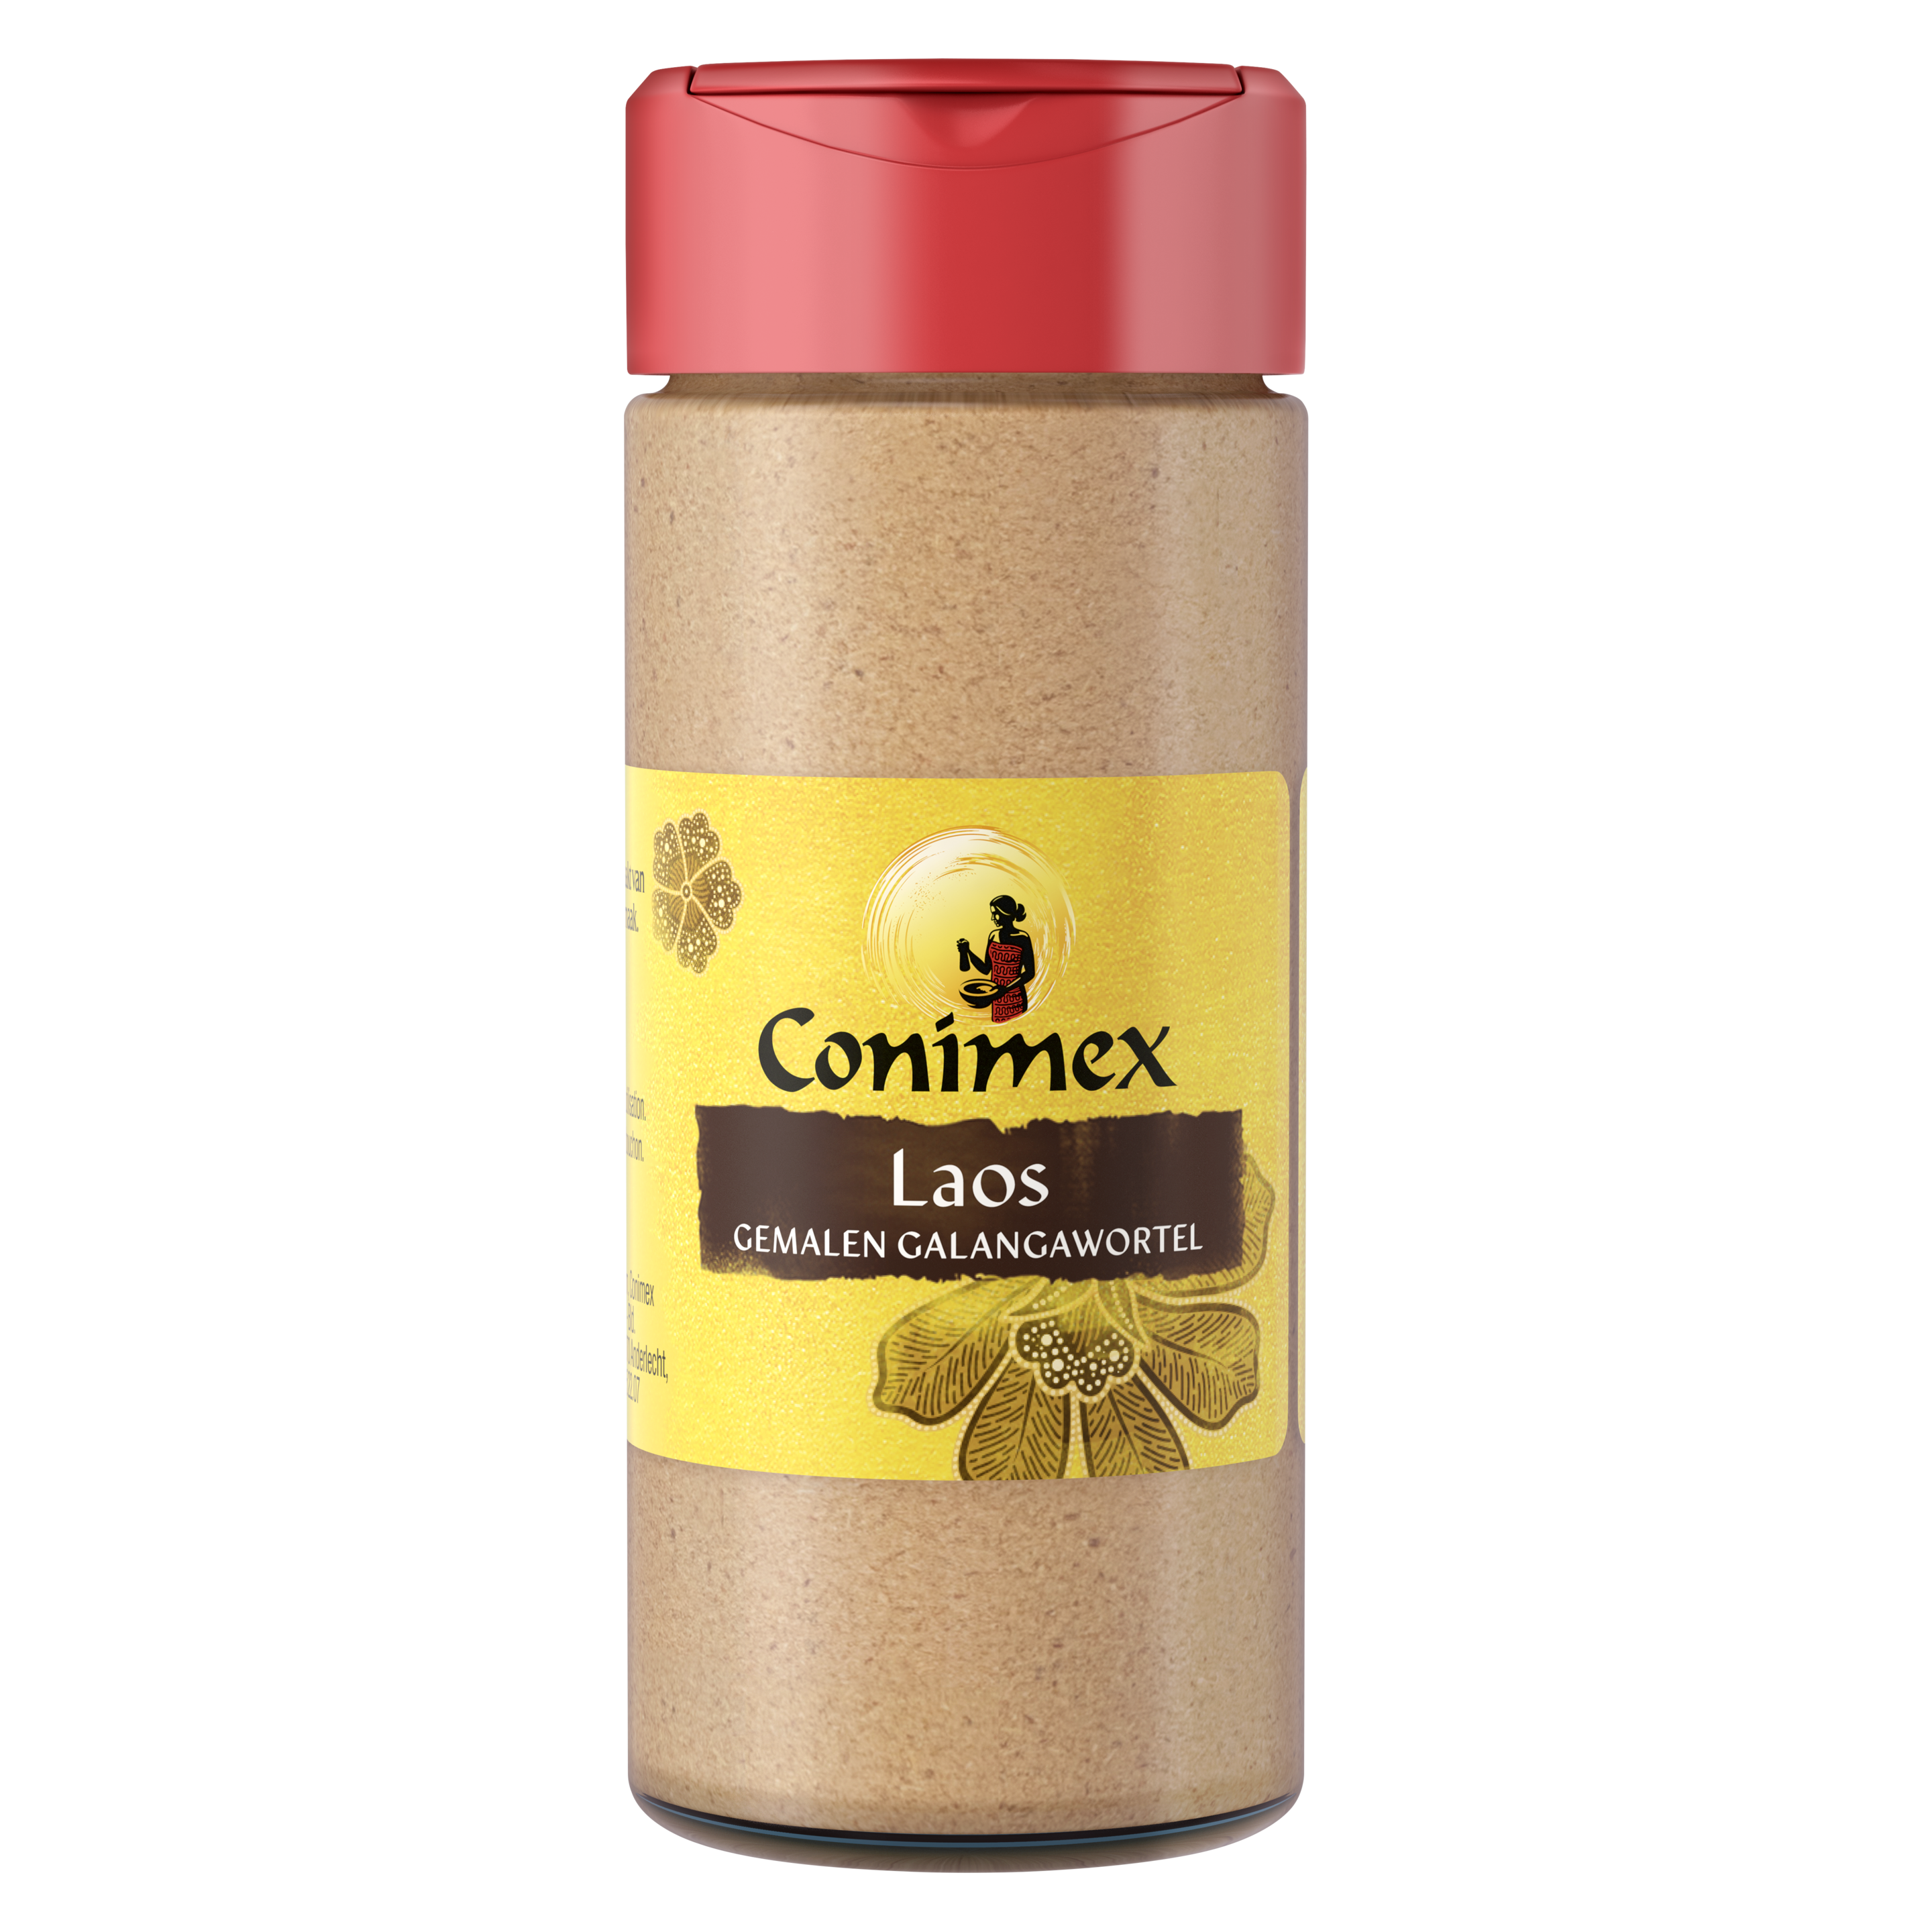 Conimex Laos